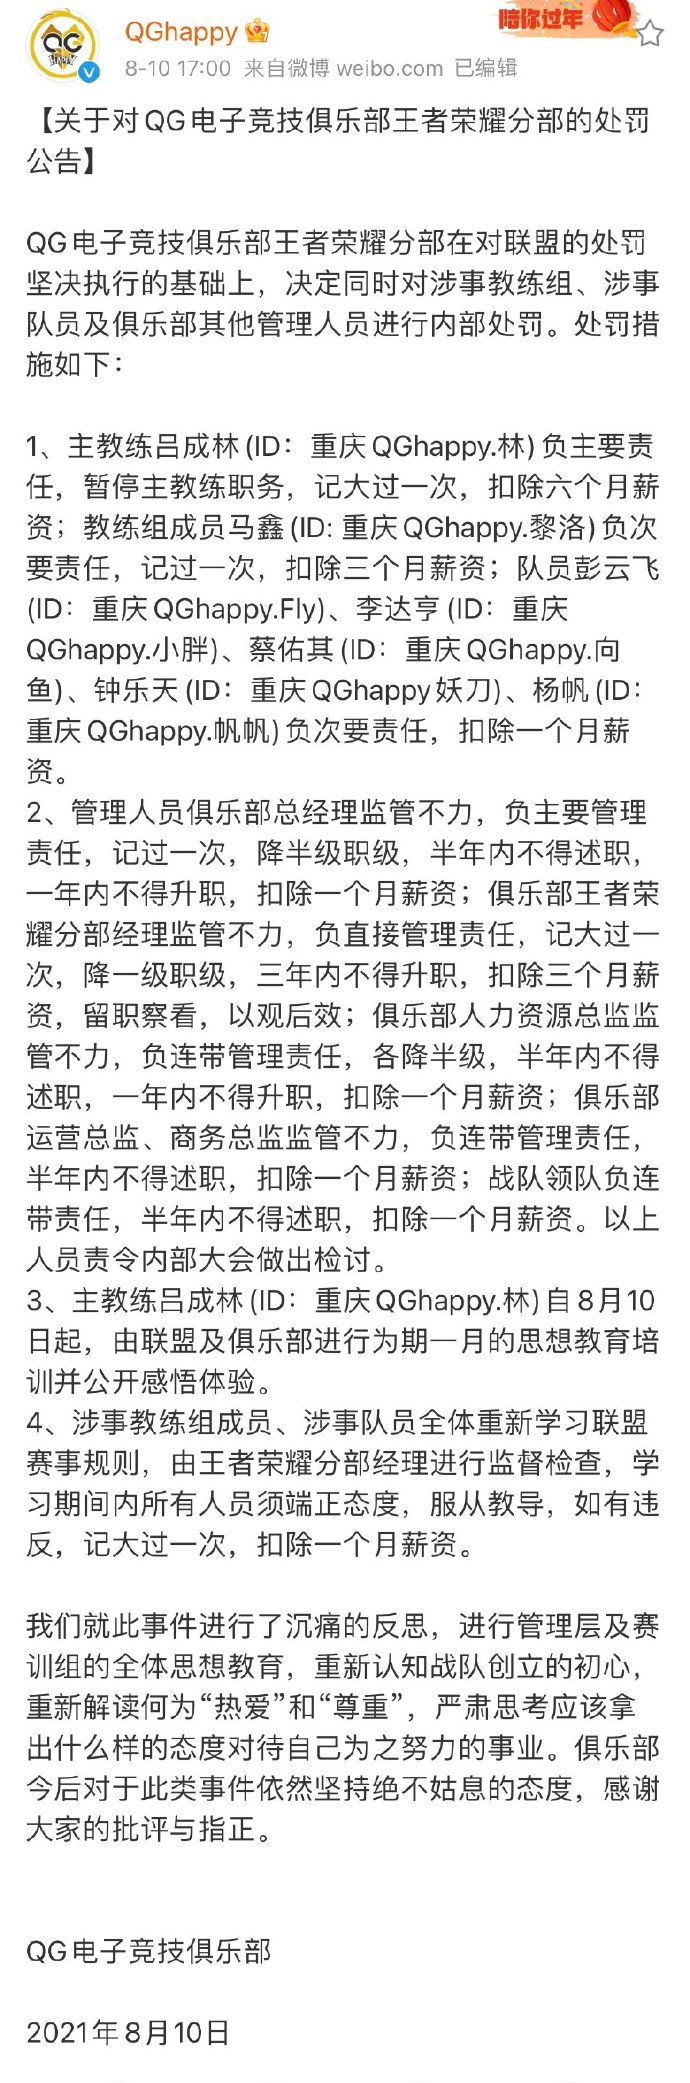 重庆QGhappy对近期事件的处罚公告